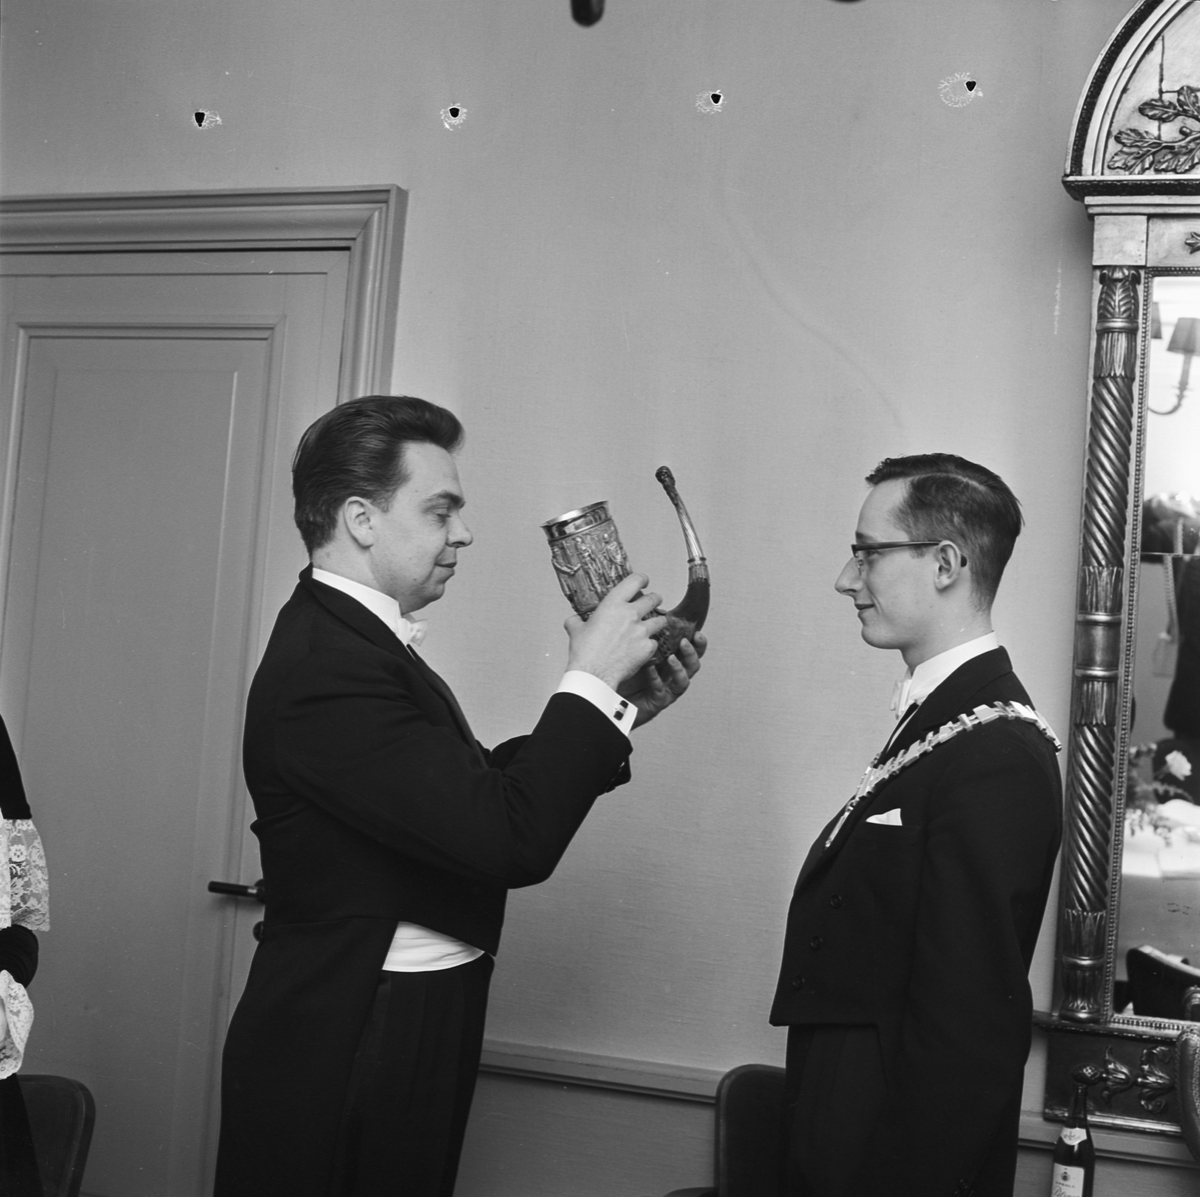 Studentkåren, kårordförandebyte, Uppsala 1962